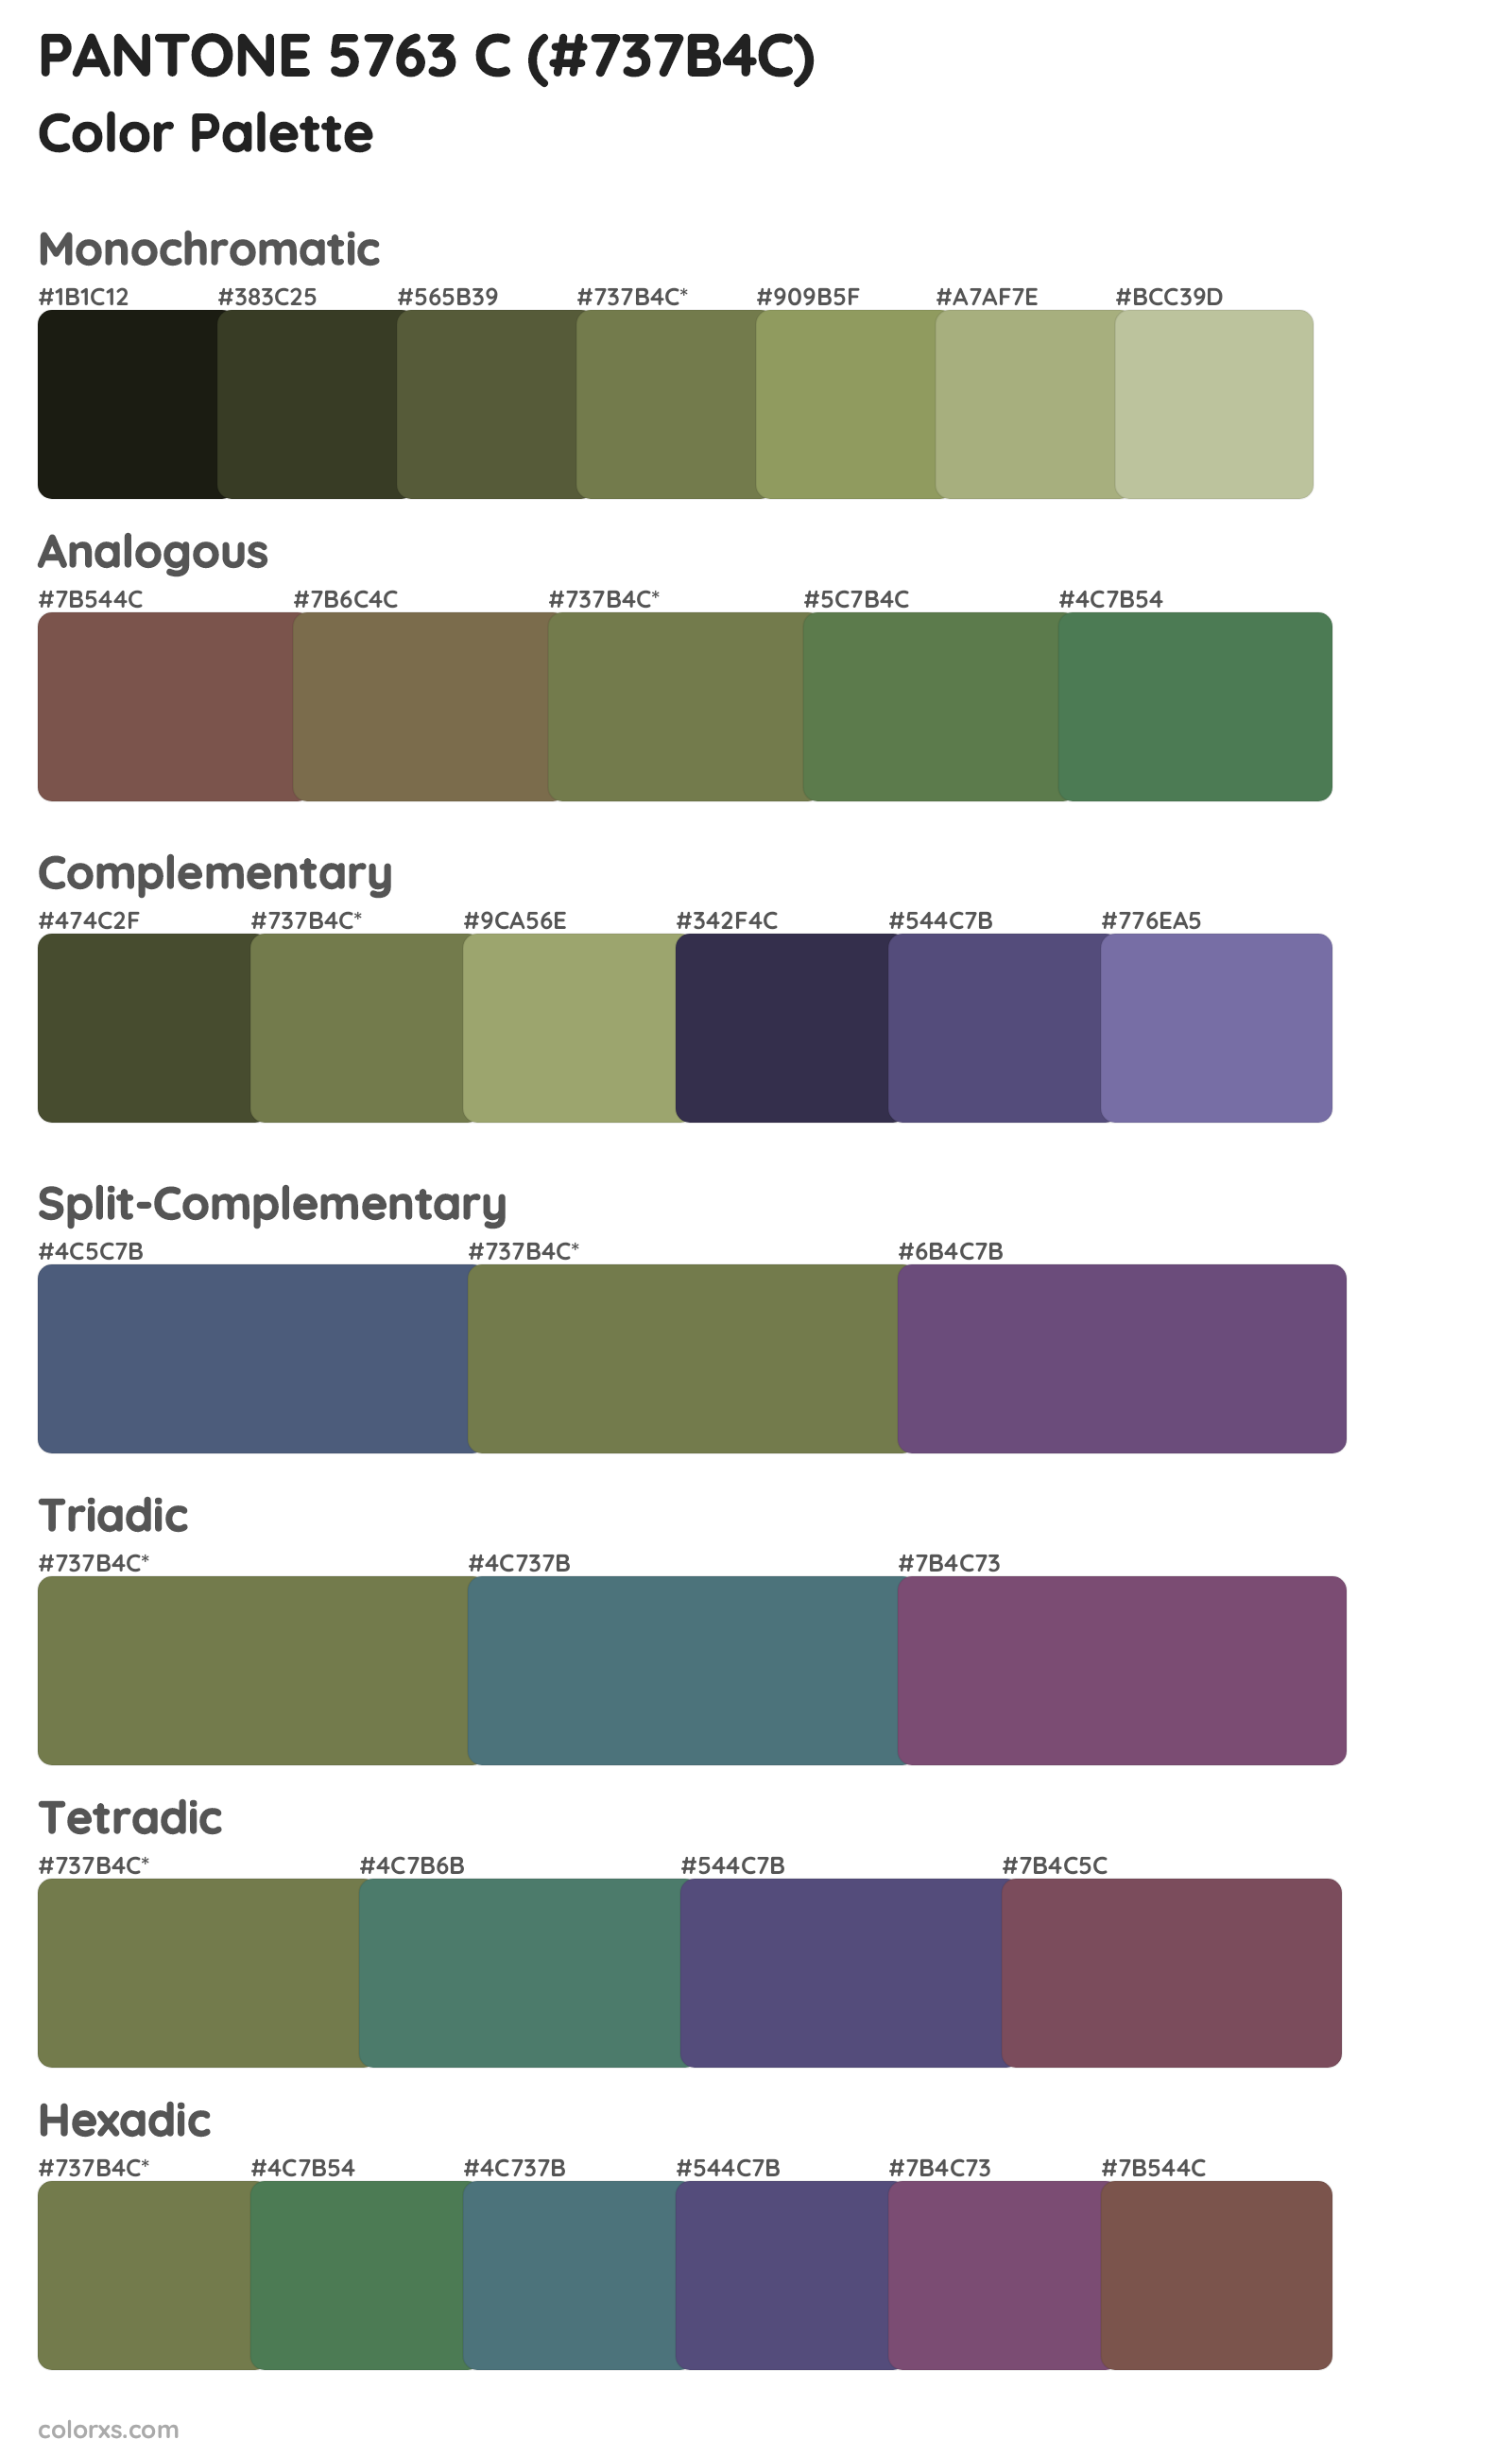 PANTONE 5763 C Color Scheme Palettes